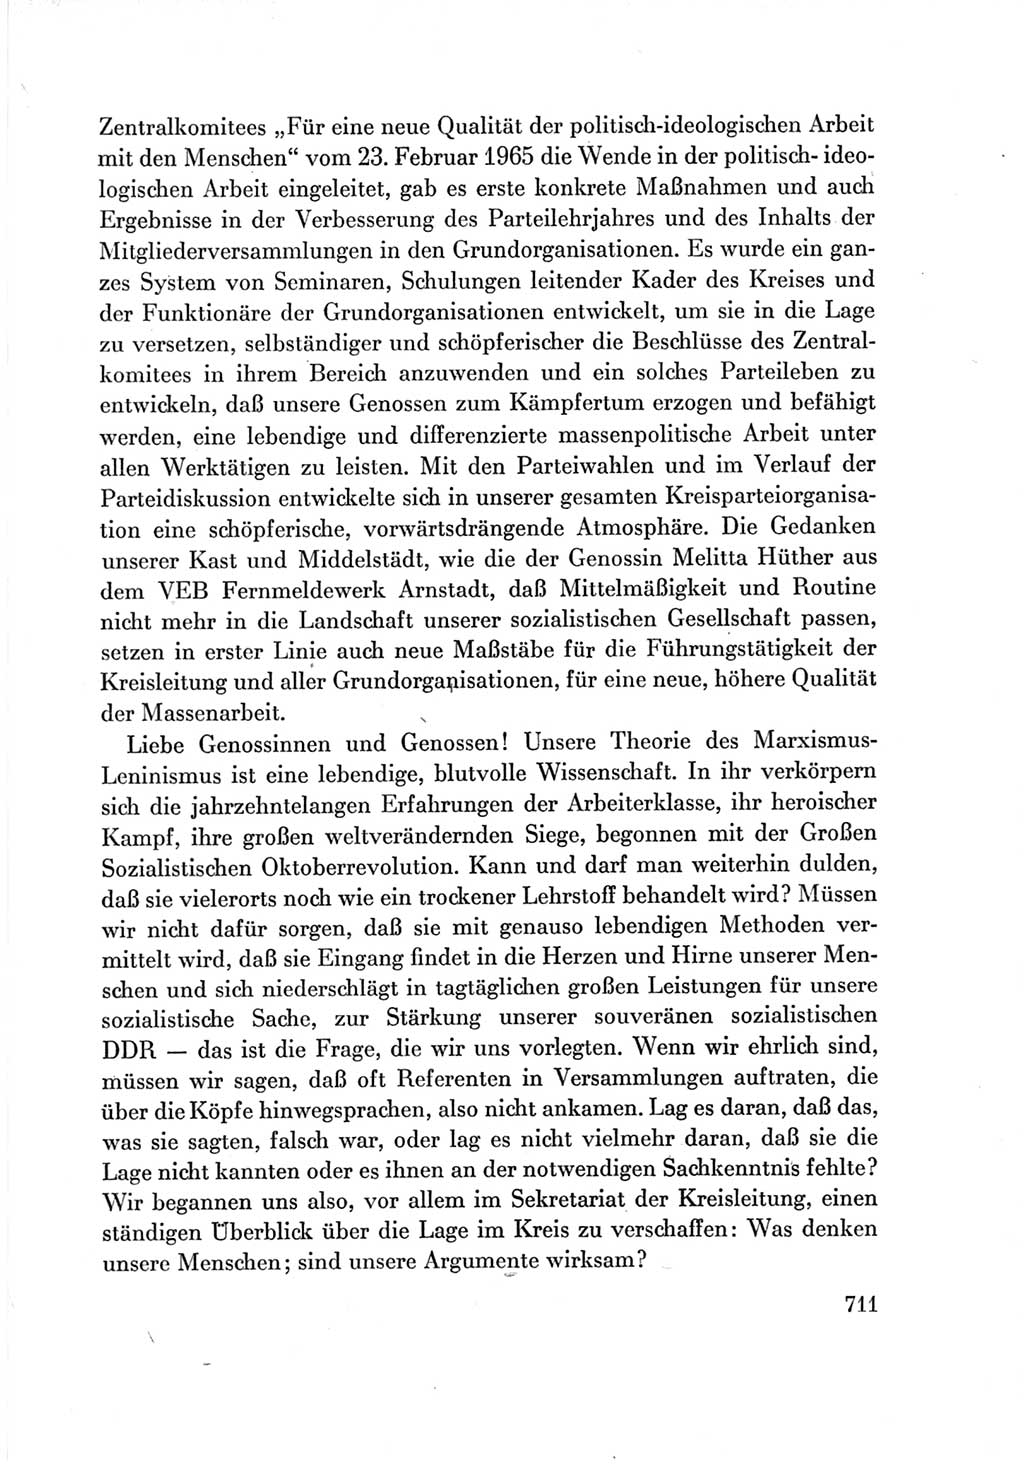 Protokoll der Verhandlungen des Ⅶ. Parteitages der Sozialistischen Einheitspartei Deutschlands (SED) [Deutsche Demokratische Republik (DDR)] 1967, Band Ⅲ, Seite 711 (Prot. Verh. Ⅶ. PT SED DDR 1967, Bd. Ⅲ, S. 711)